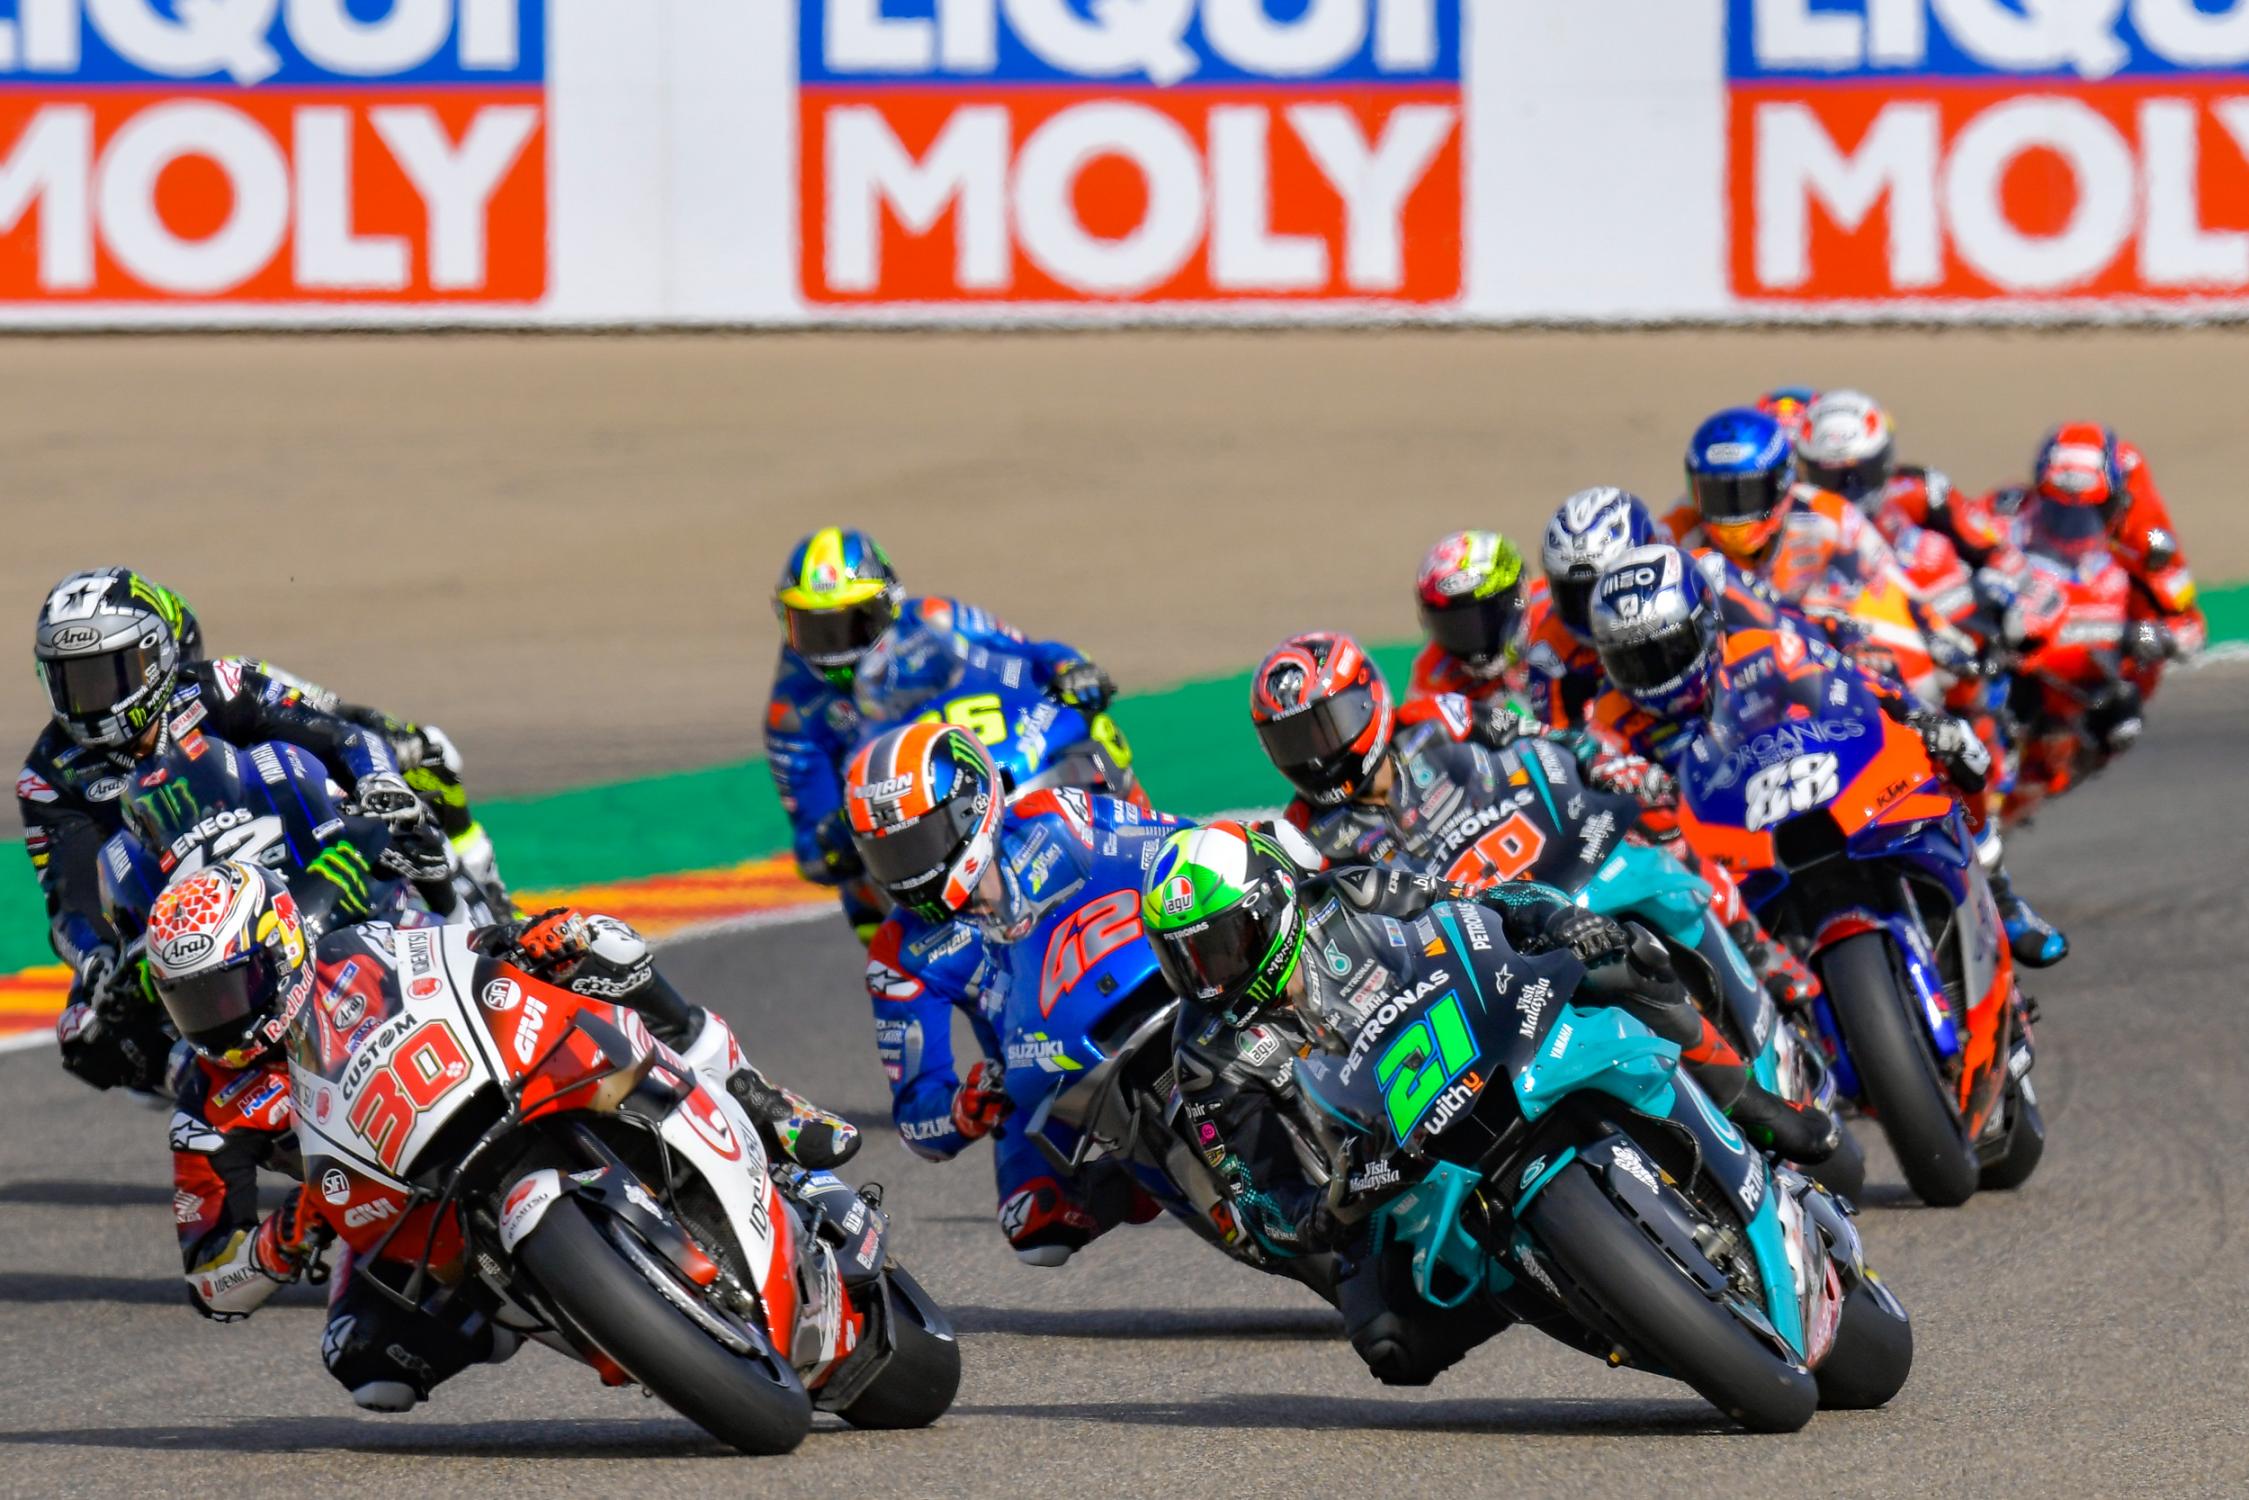 Tři závody v řadě, to bude finále letošní sezóny MotoGP